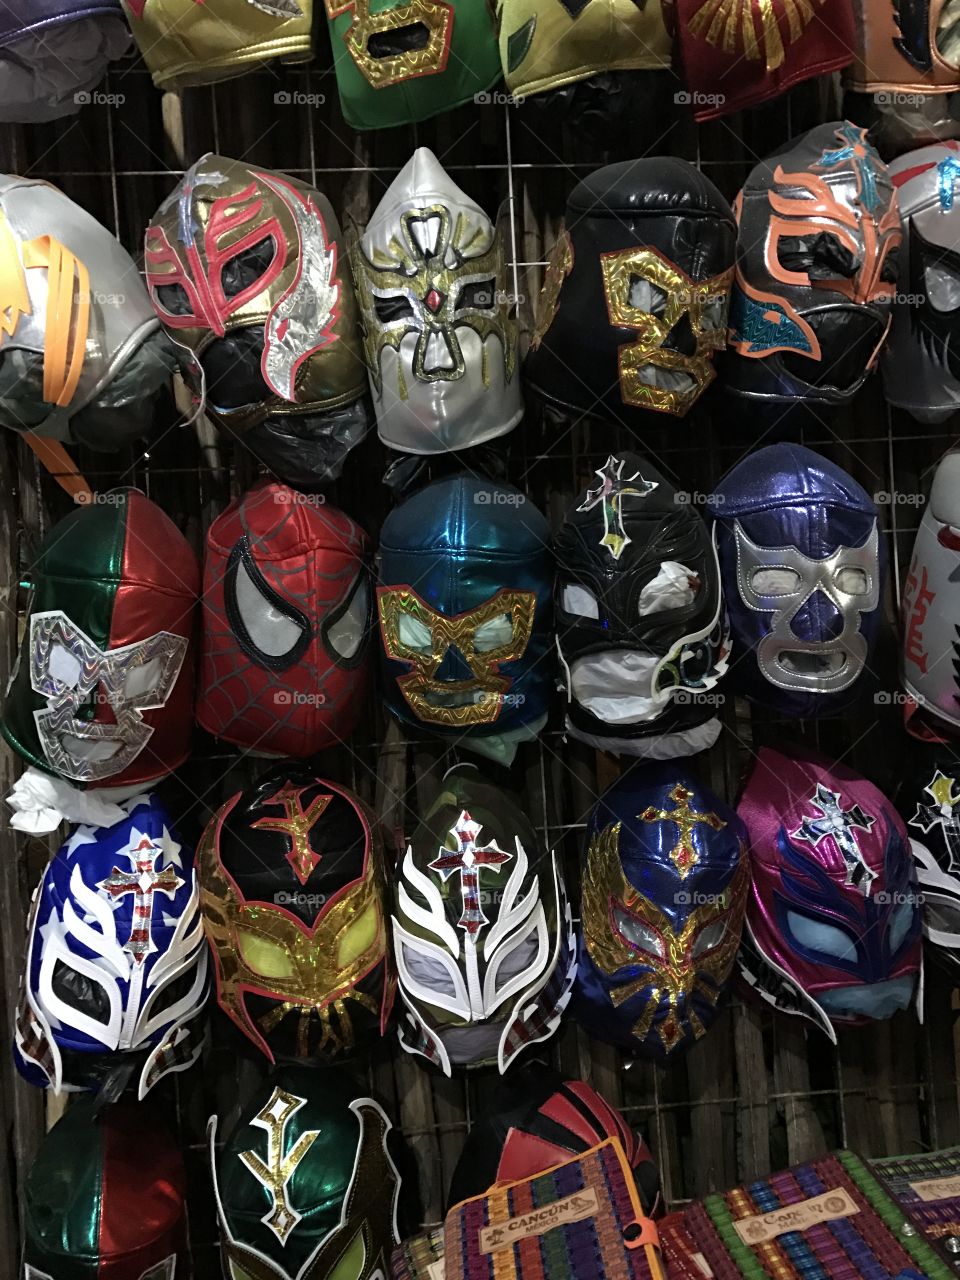 Lucha door mask's at market